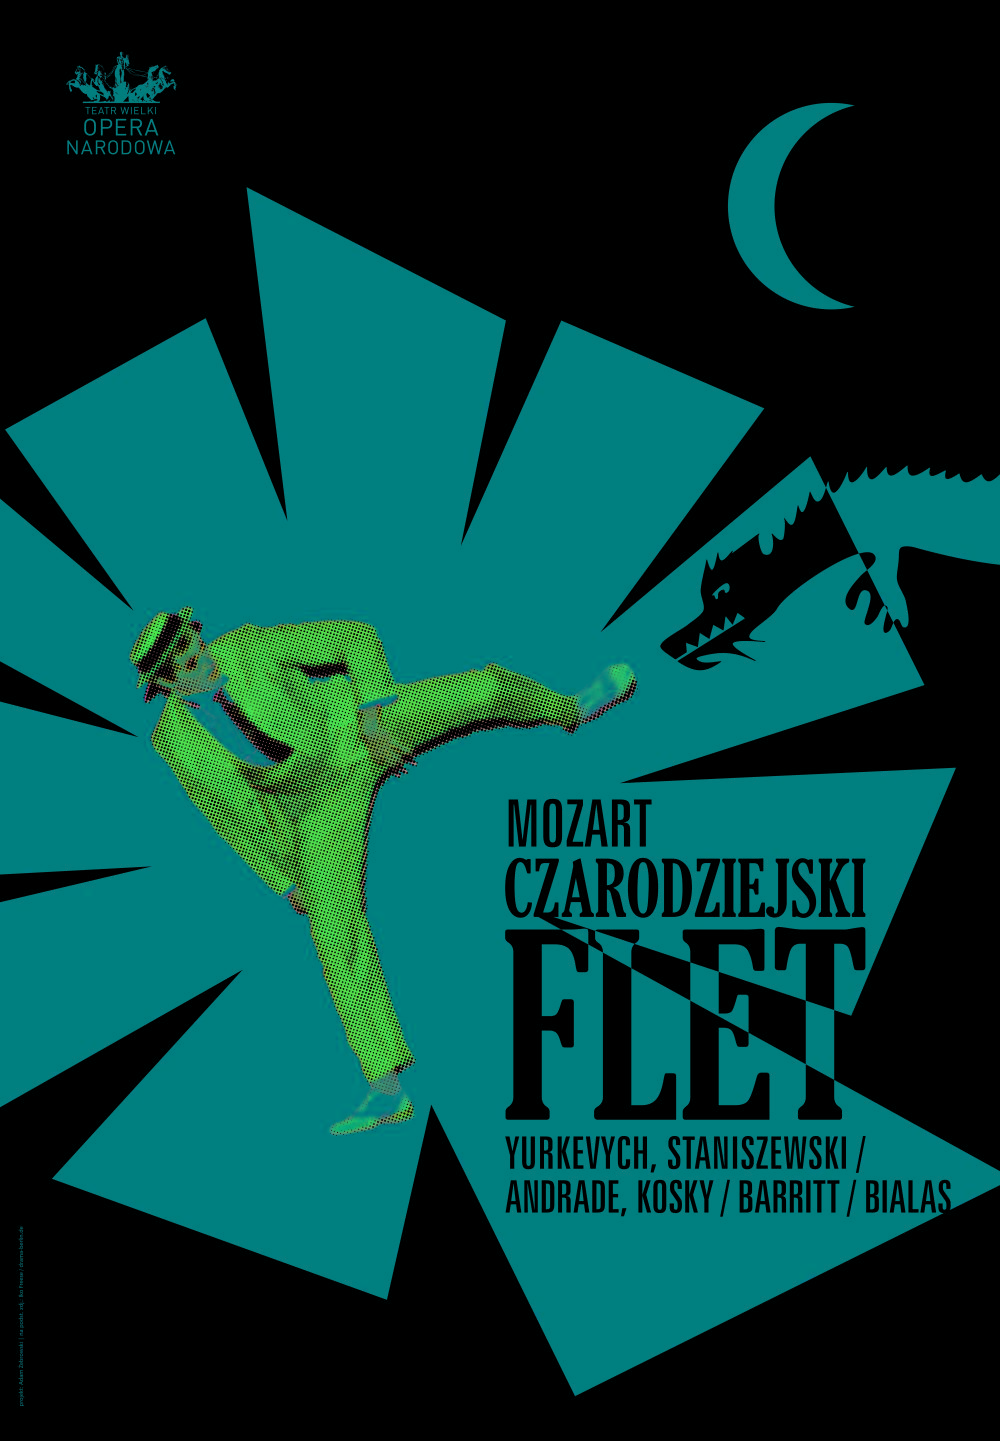 Plakat „Carodziejski flet” Wolfgang Amadeus Mozart premiera 2016-12-11